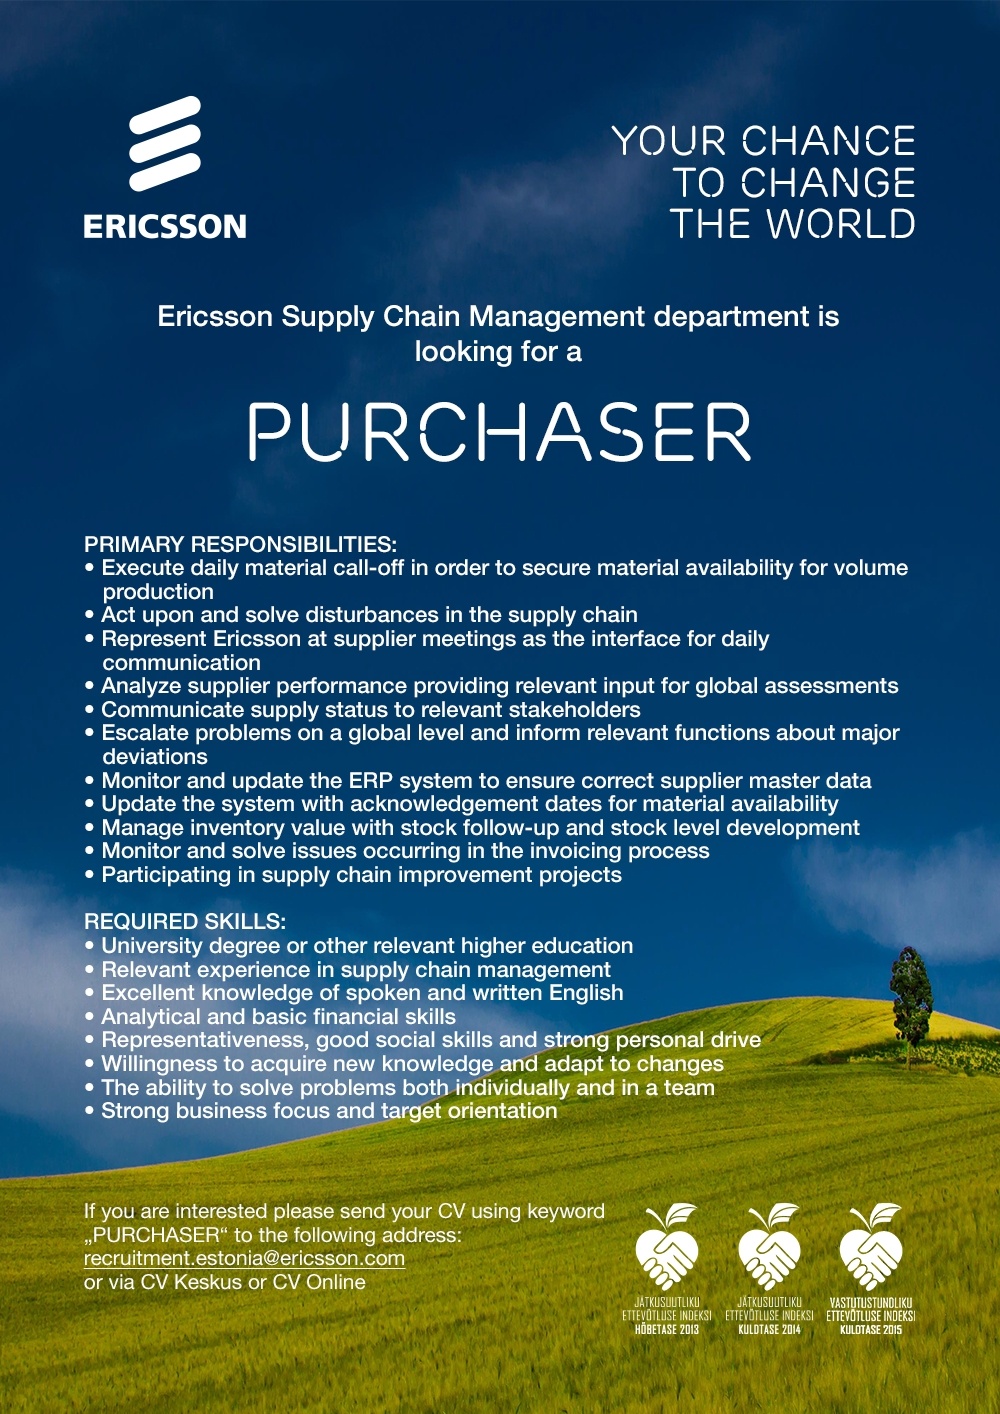 Ericsson Eesti AS Purchaser